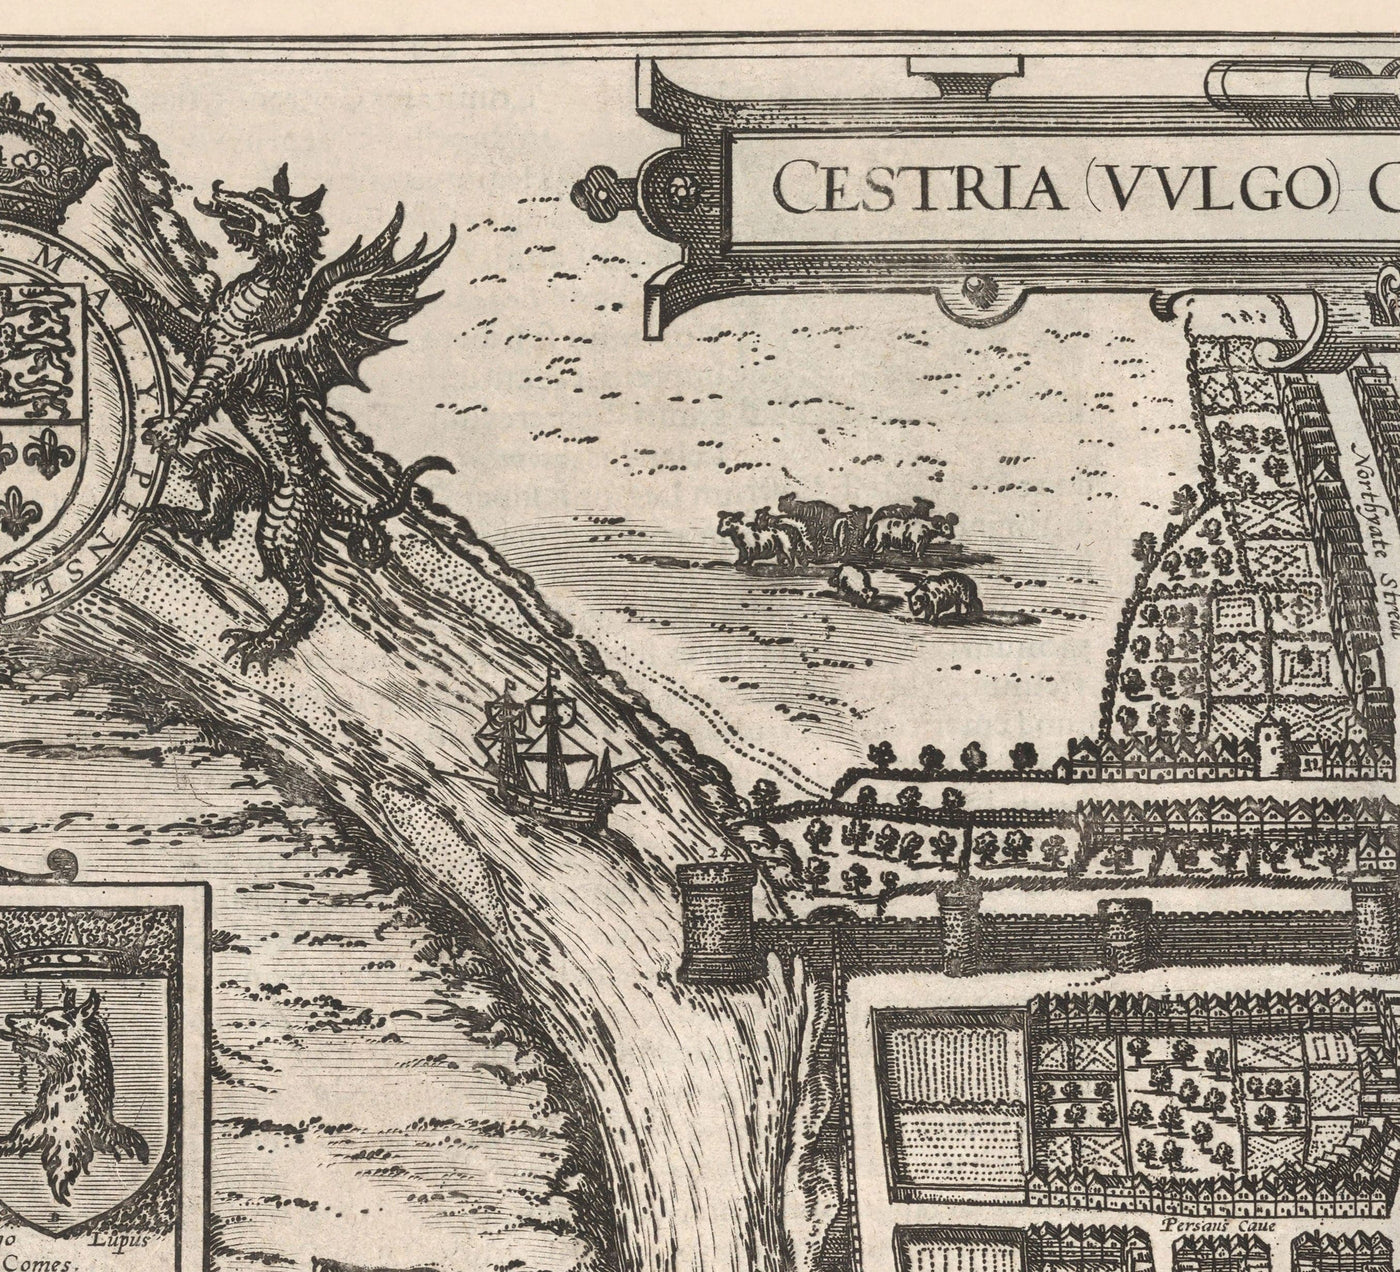 Ancienne Carte de Chester, Cheshire 1581 de Georg Braun - Château, Cathédrale, Murs de la ville romaine